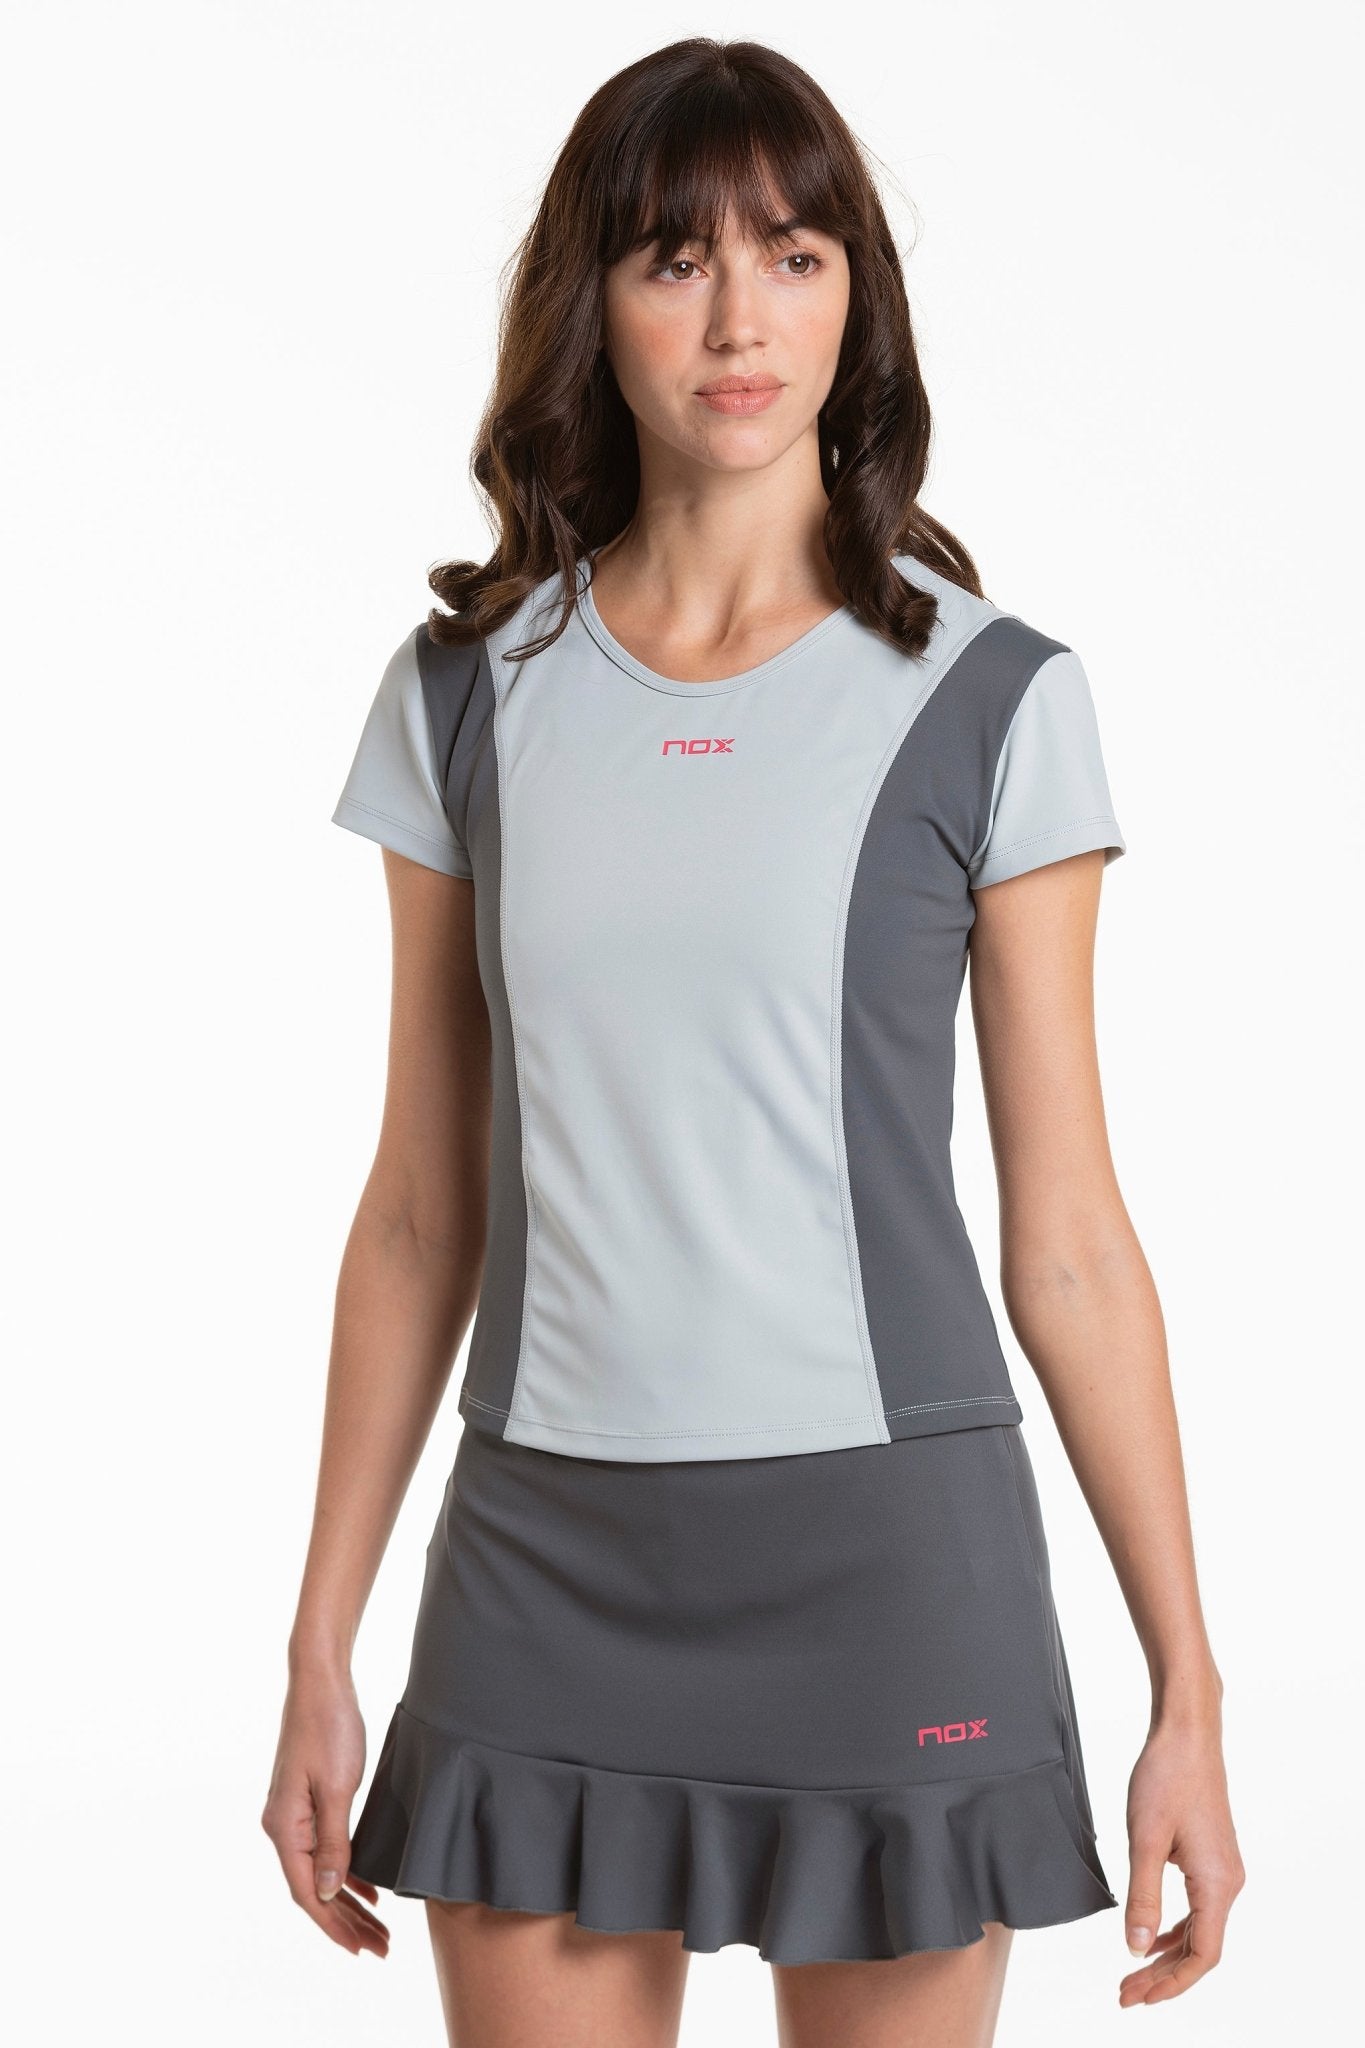 Camiseta Pádel Mujer PRO - REGULAR light grey